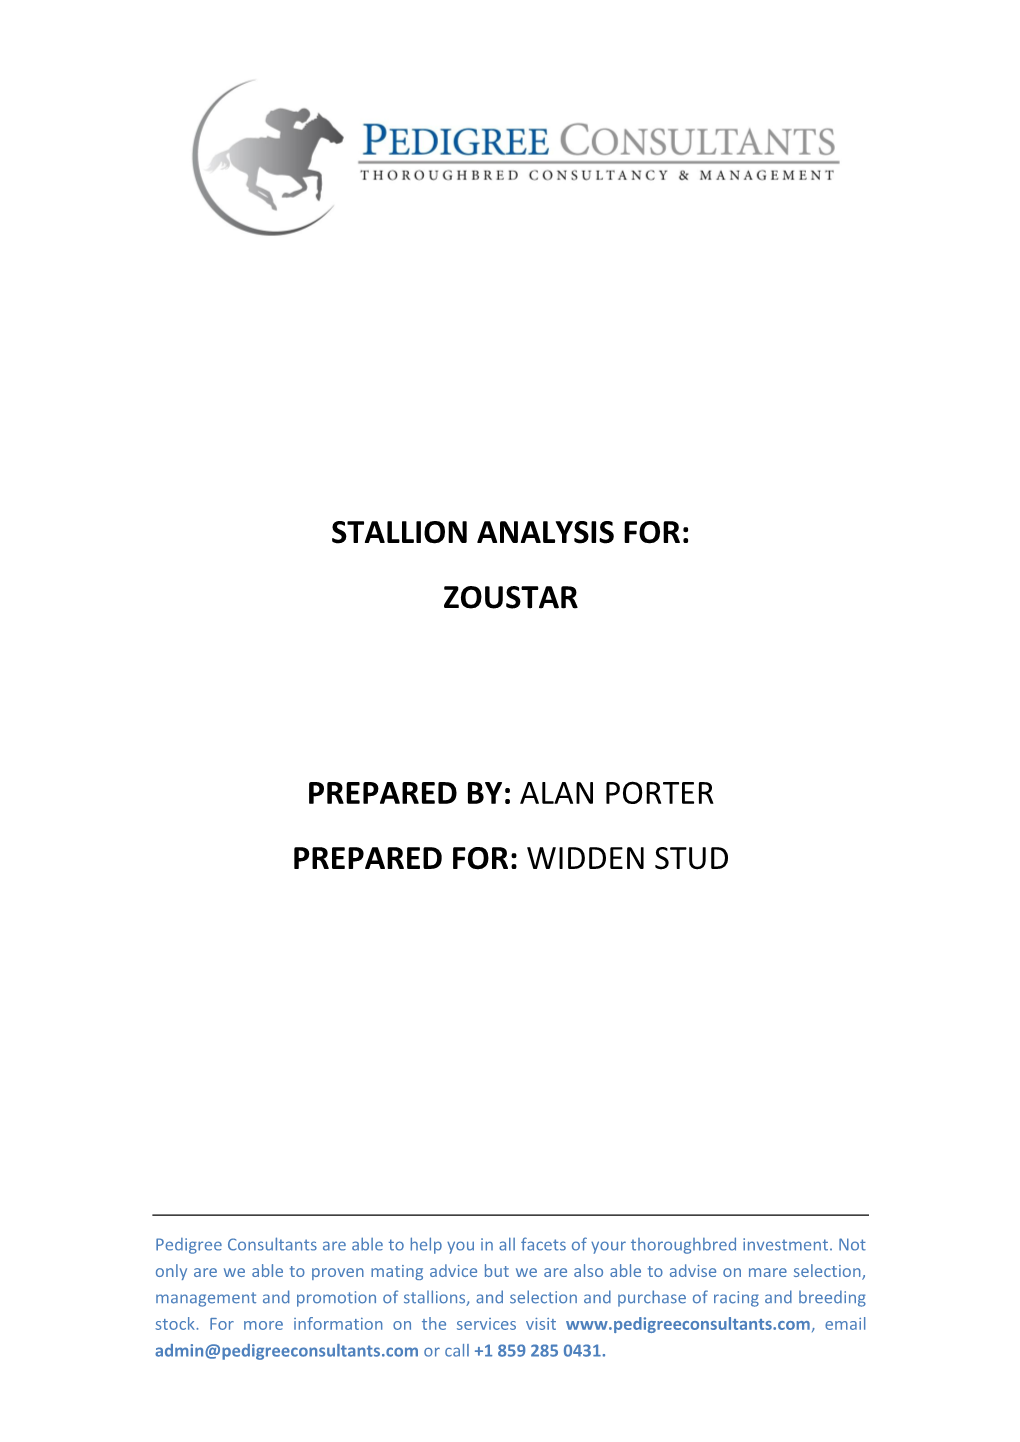 Stallion Analysis For: Zoustar